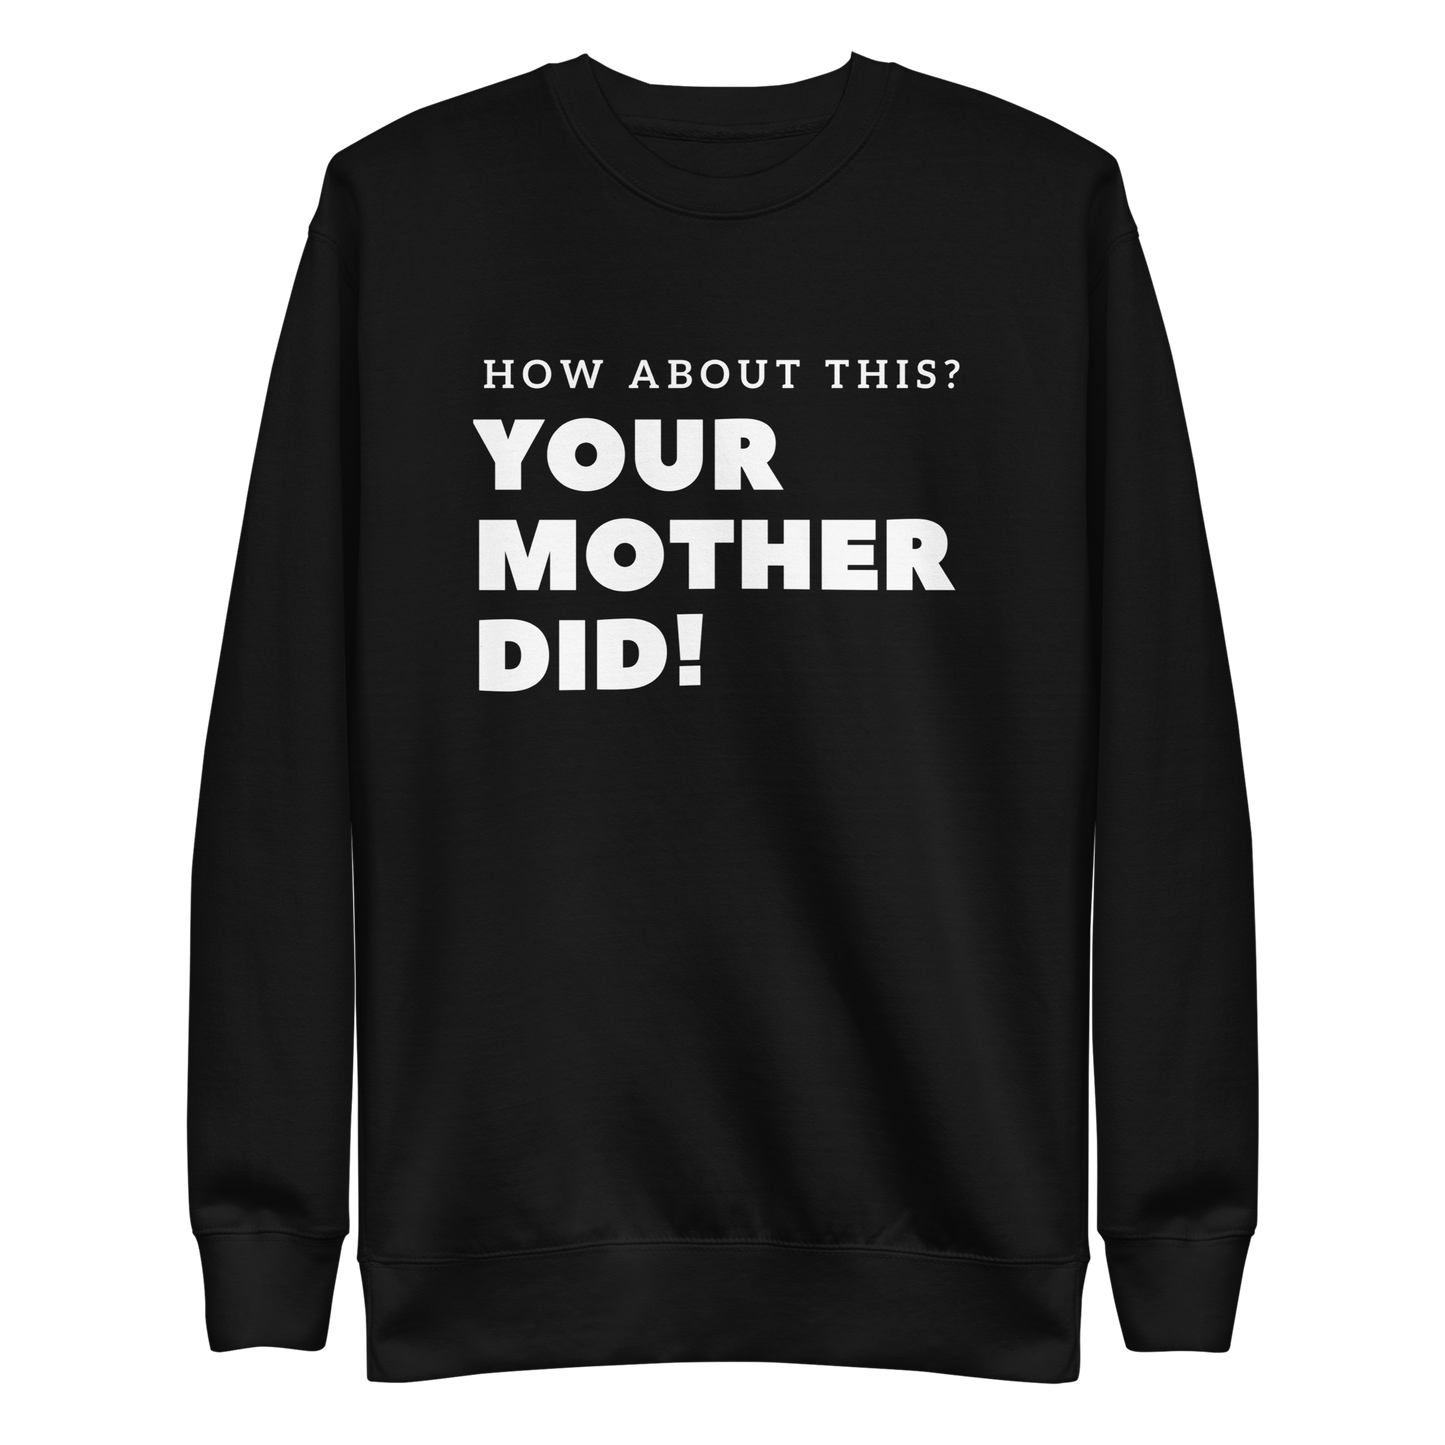 Your Mother Did! Unisex Premium Sweatshirt